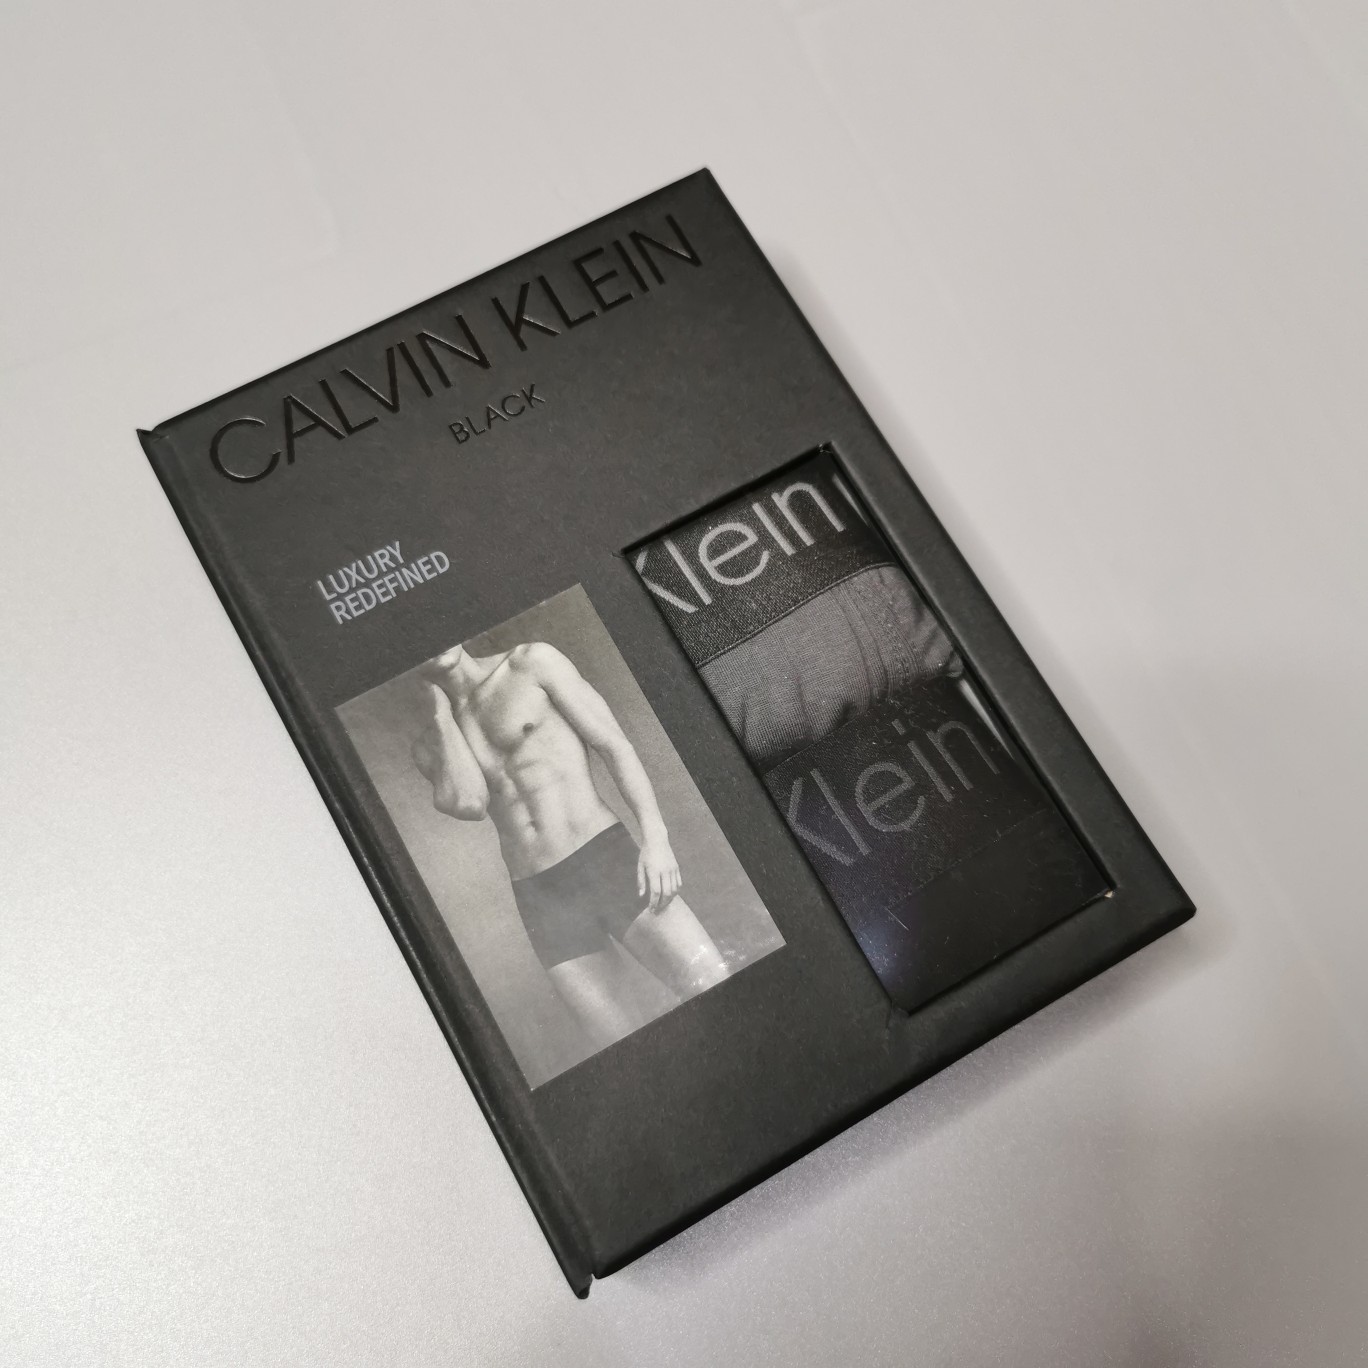 专柜包装同款一盒三条CalvinKlein家族英美发售最新款经典腰间LOGO刺绣设计极品细梳棉材质男士高